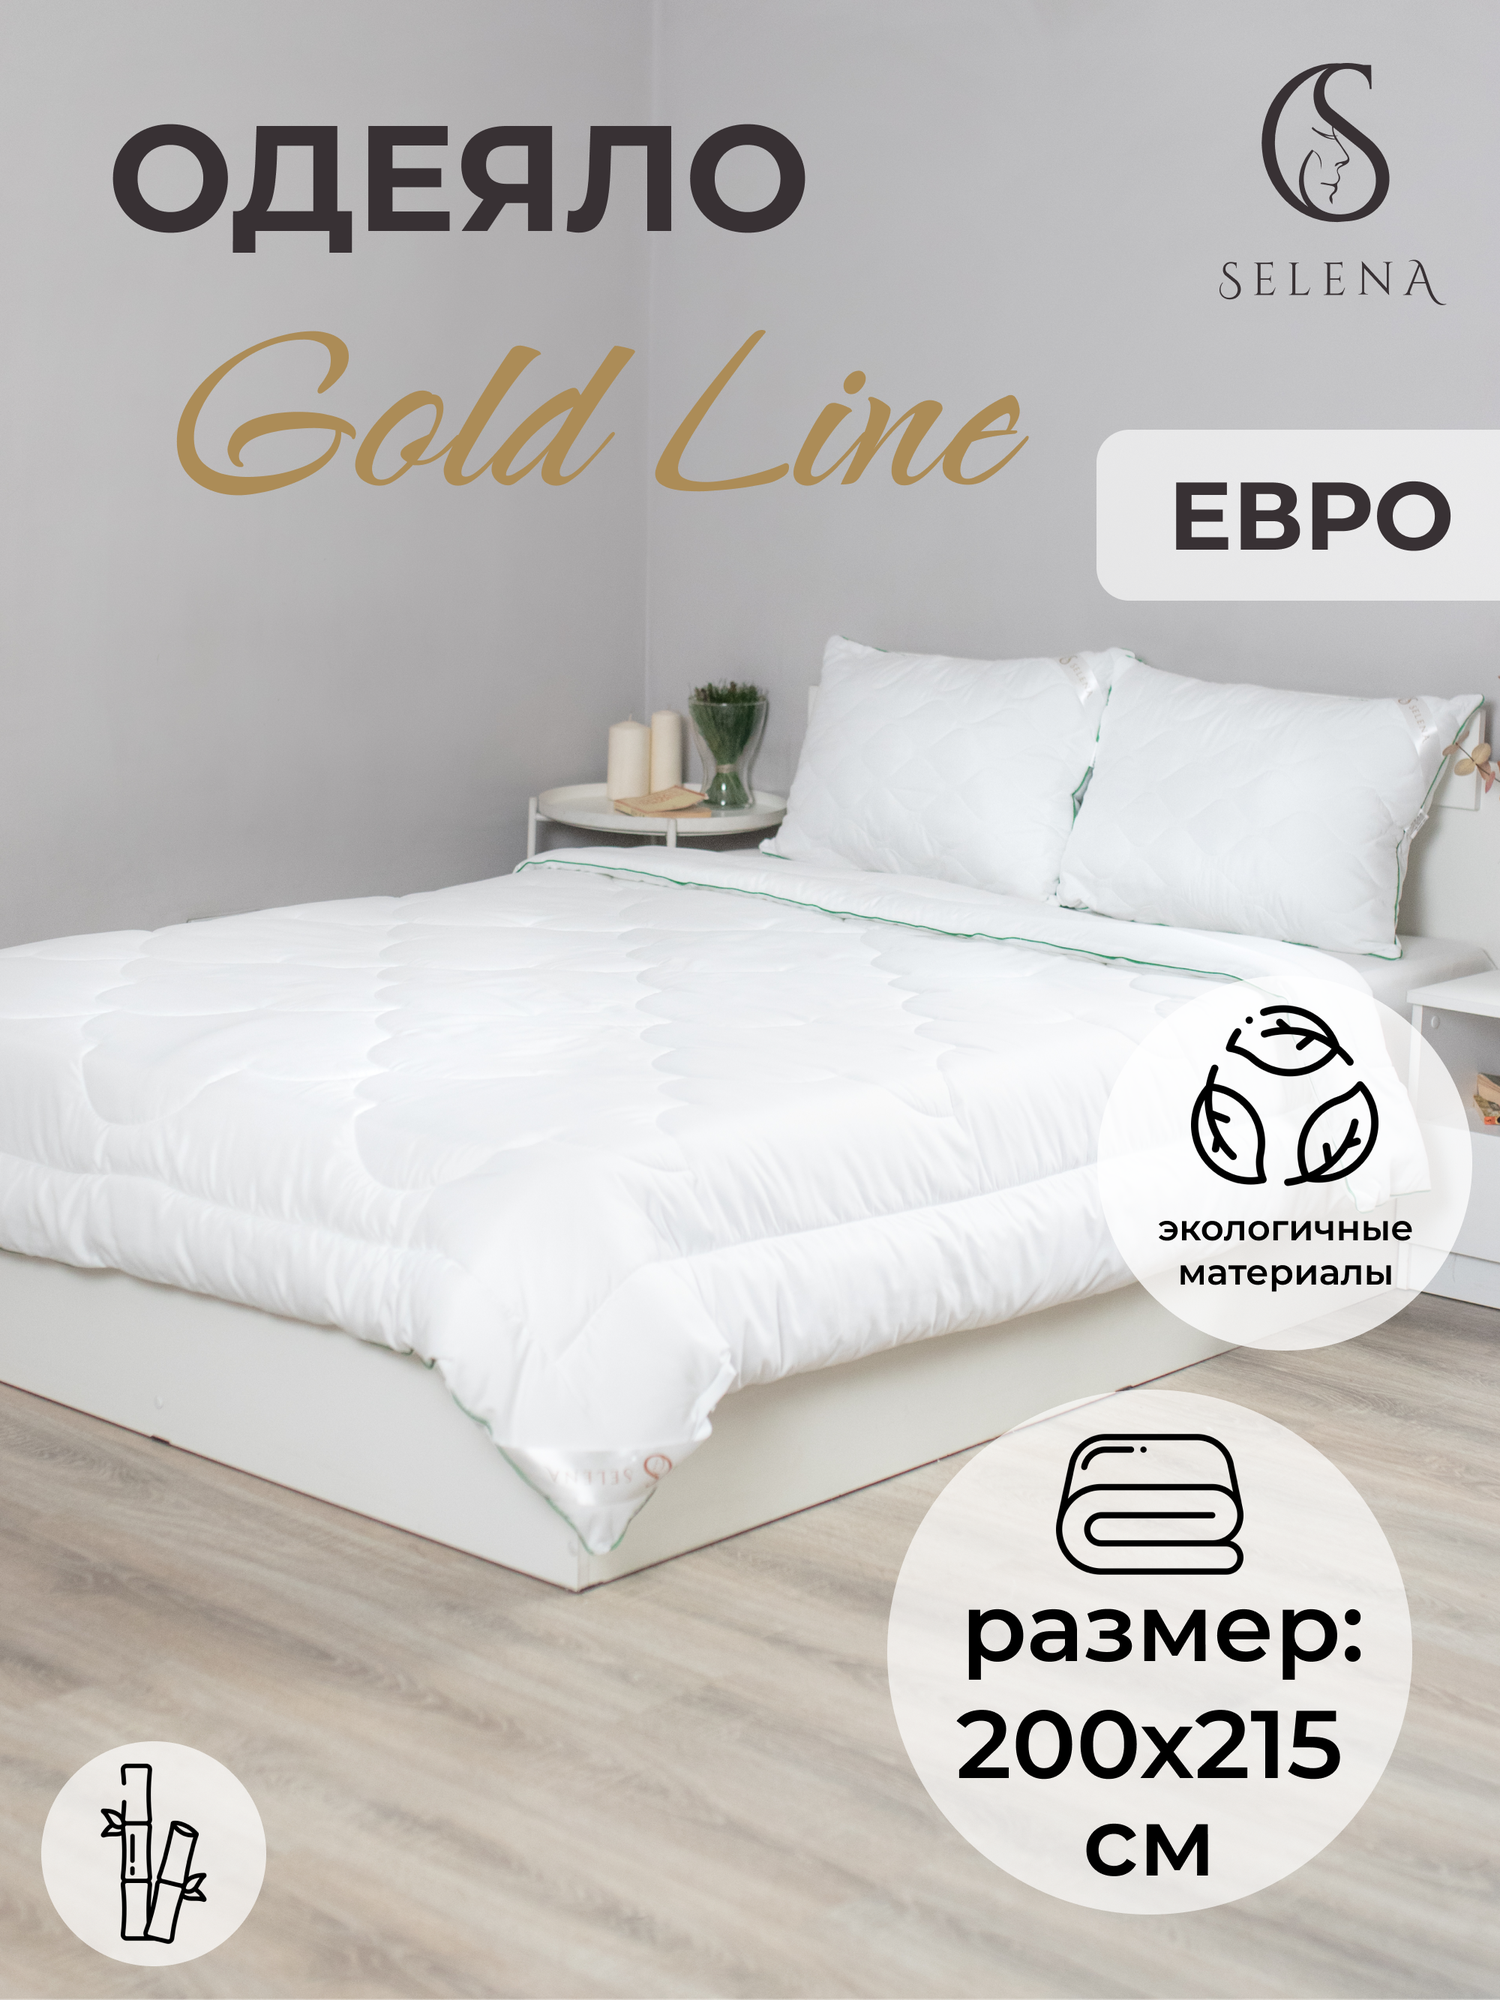 Одеяло SELENA GOLD LINE, евро 200х215 , бамбук 250 г